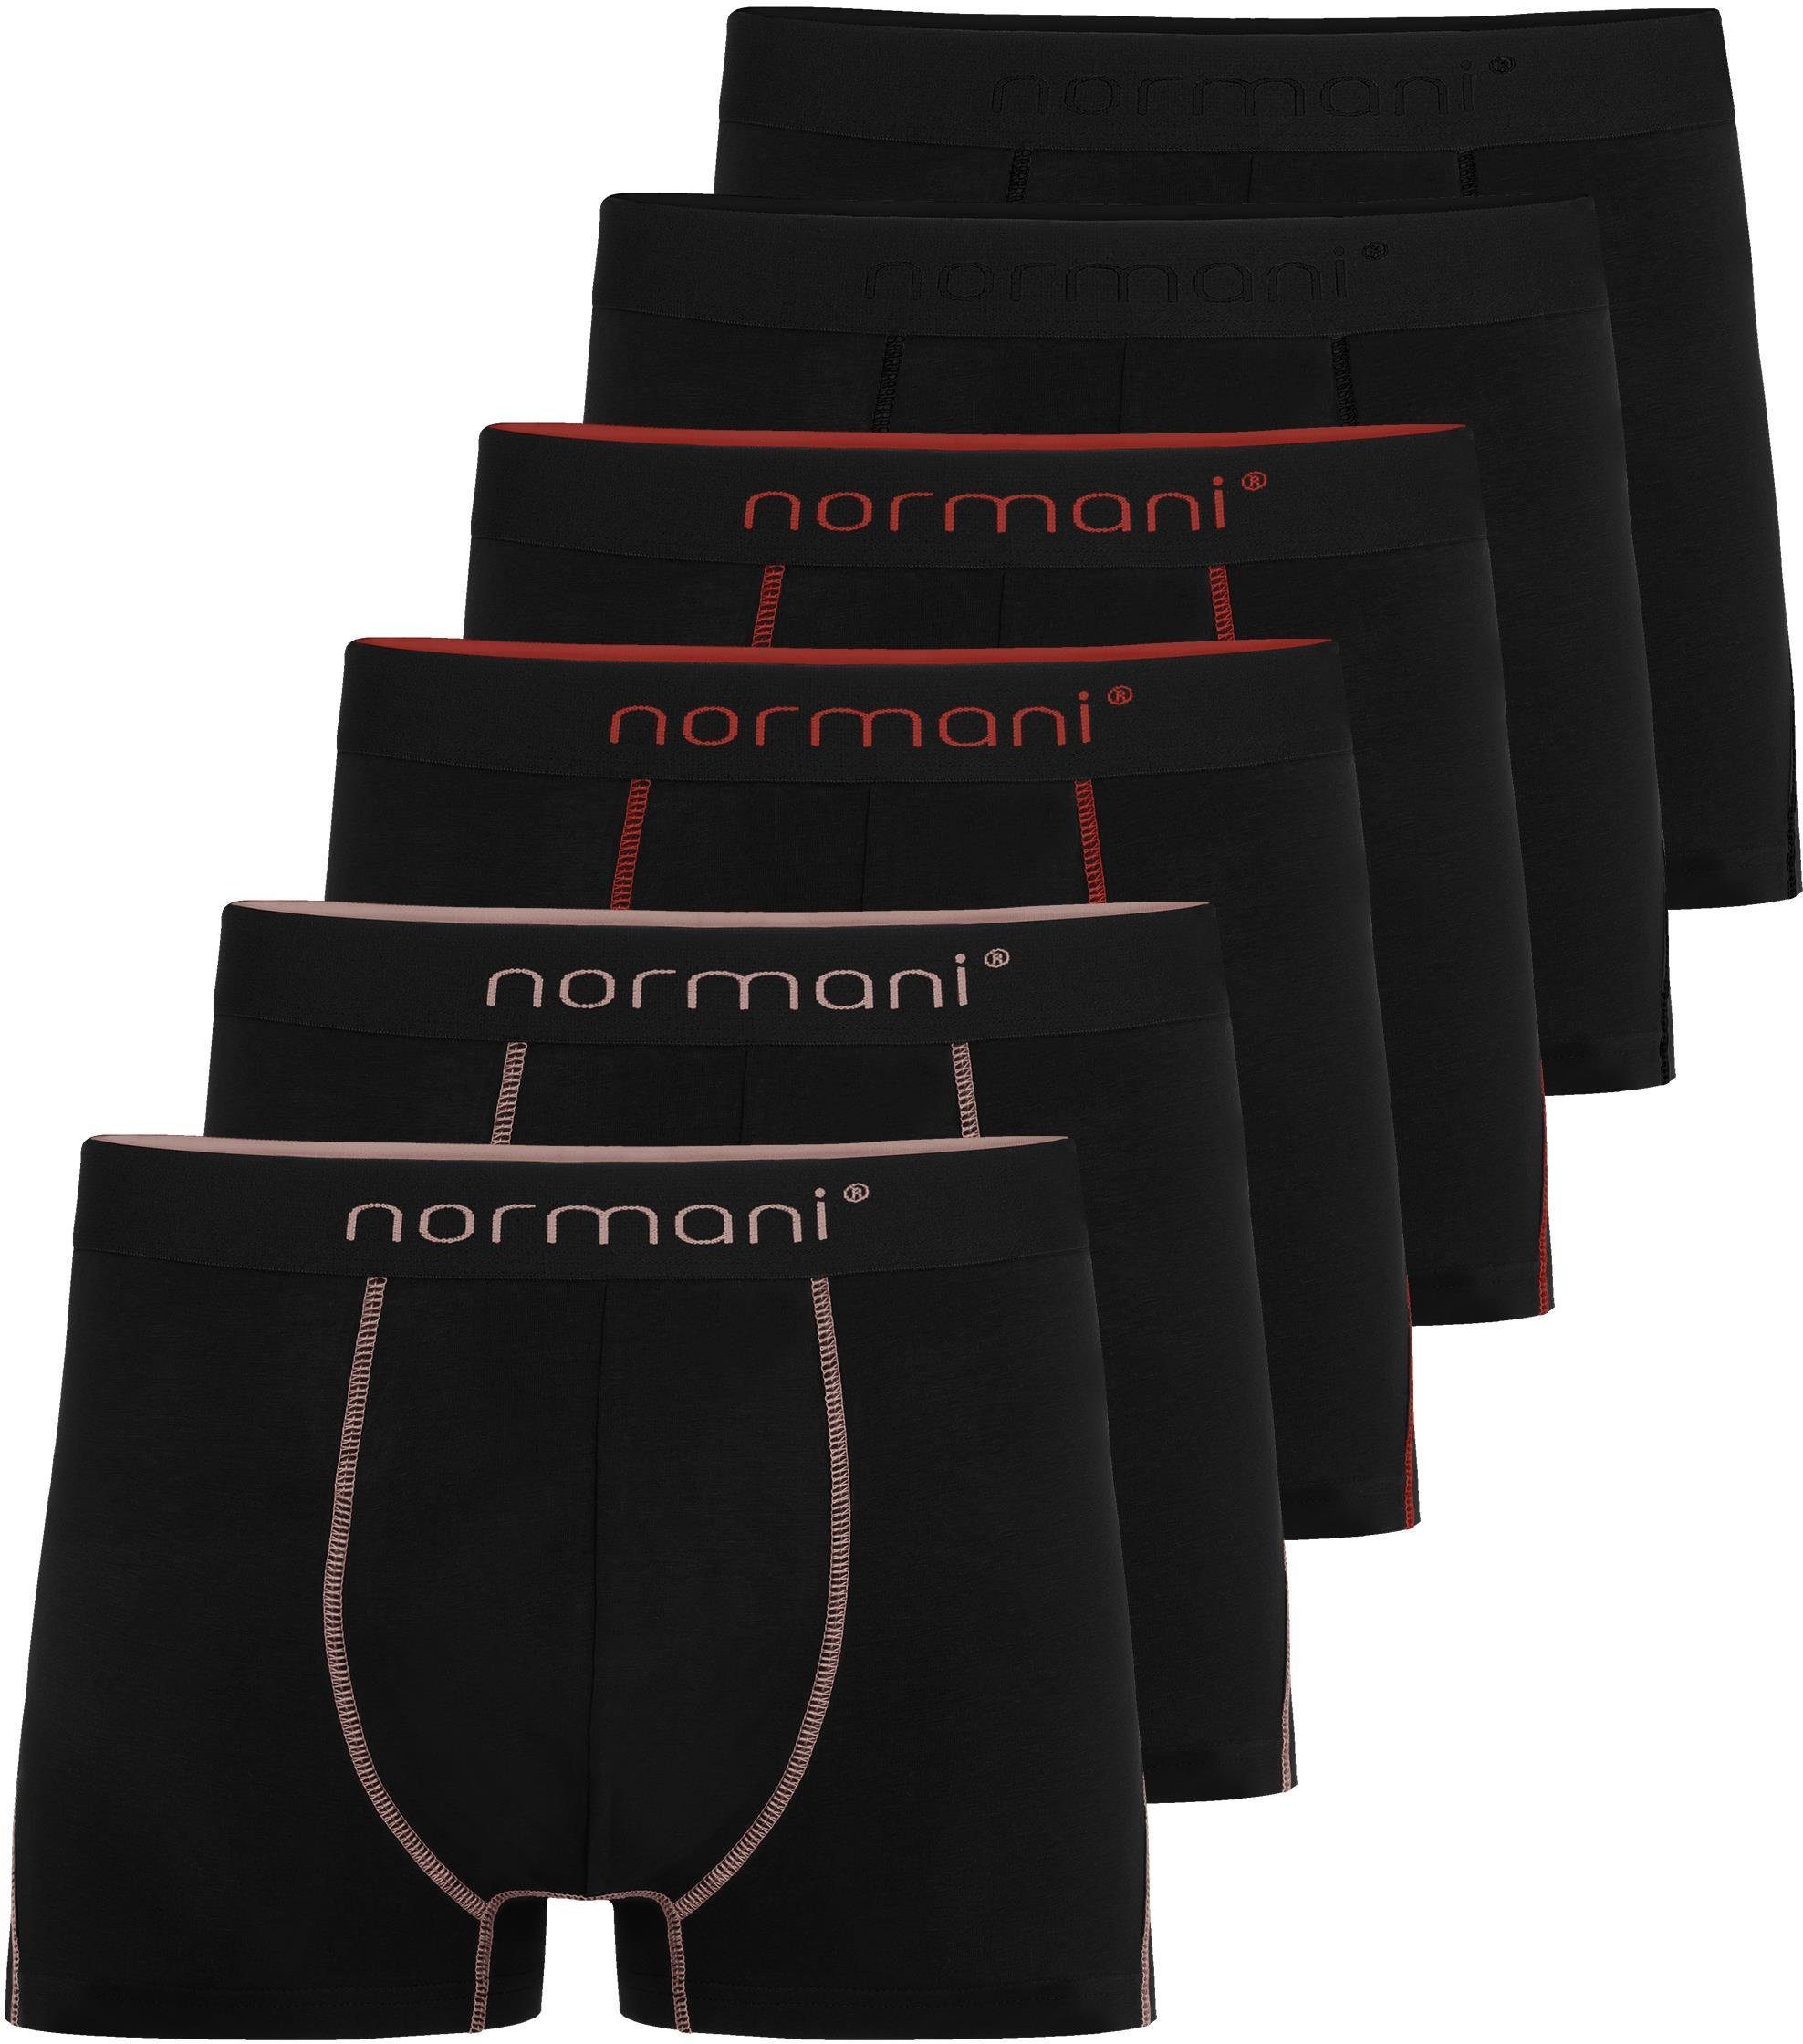 atmungsaktiver Unterhose aus 6 Herren Baumwoll-Boxershorts Boxershorts Lachs/Rot/Schwarz Baumwolle für normani Männer